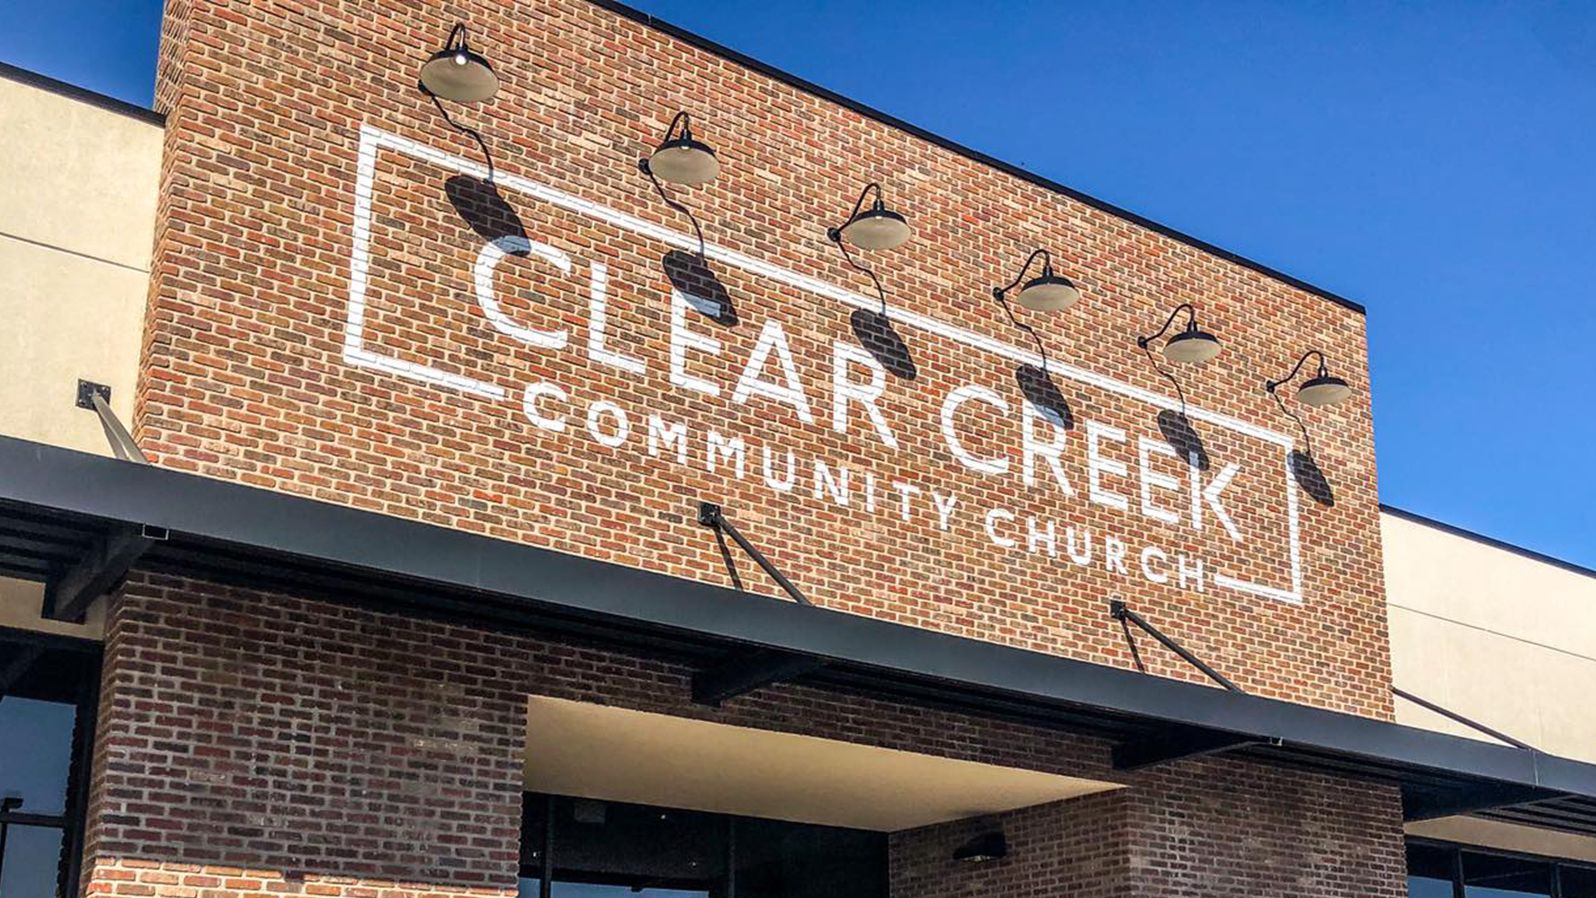 clear creek community church